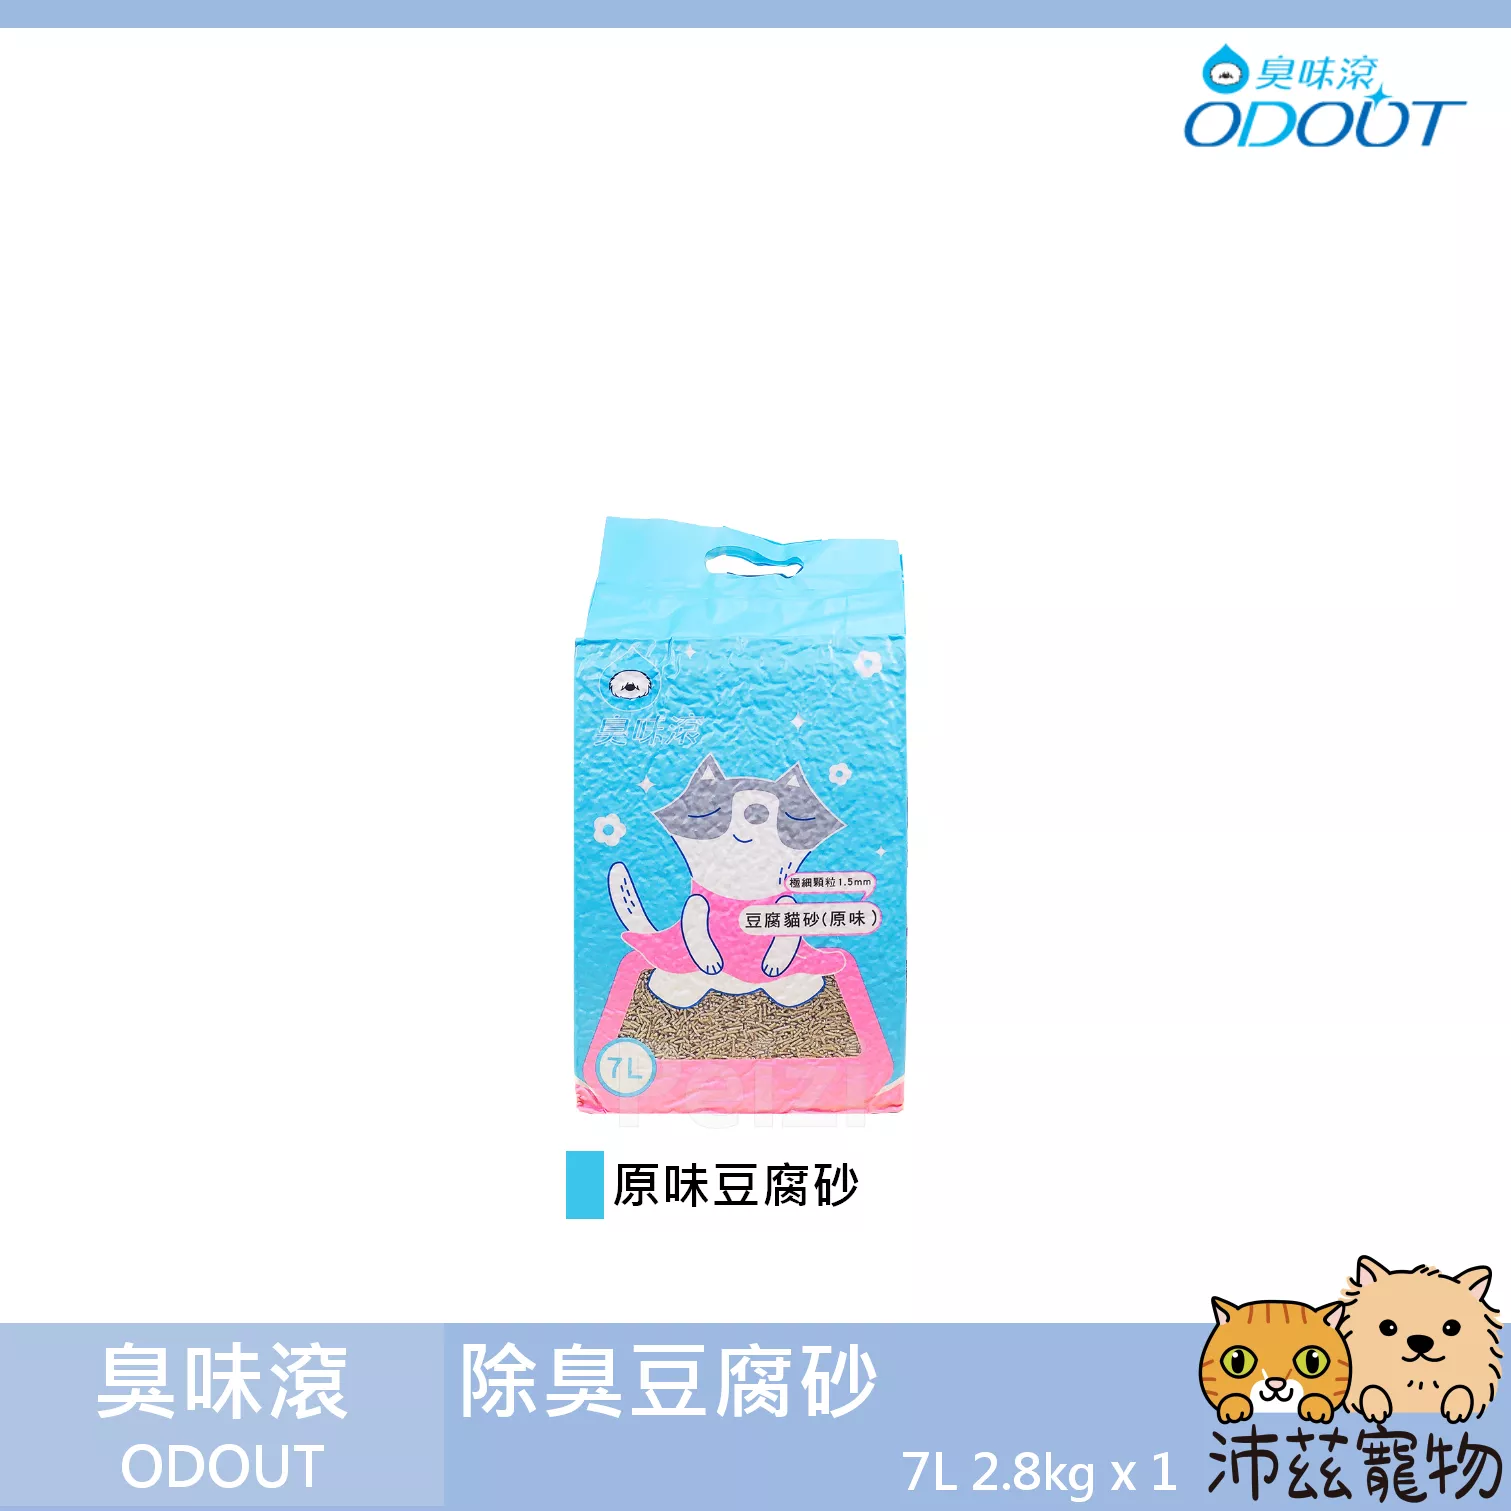 【臭味滾 ODOUT 除臭豆腐砂】極細 條狀 豆腐砂 貓砂 貓 沙 7L 2.8kg